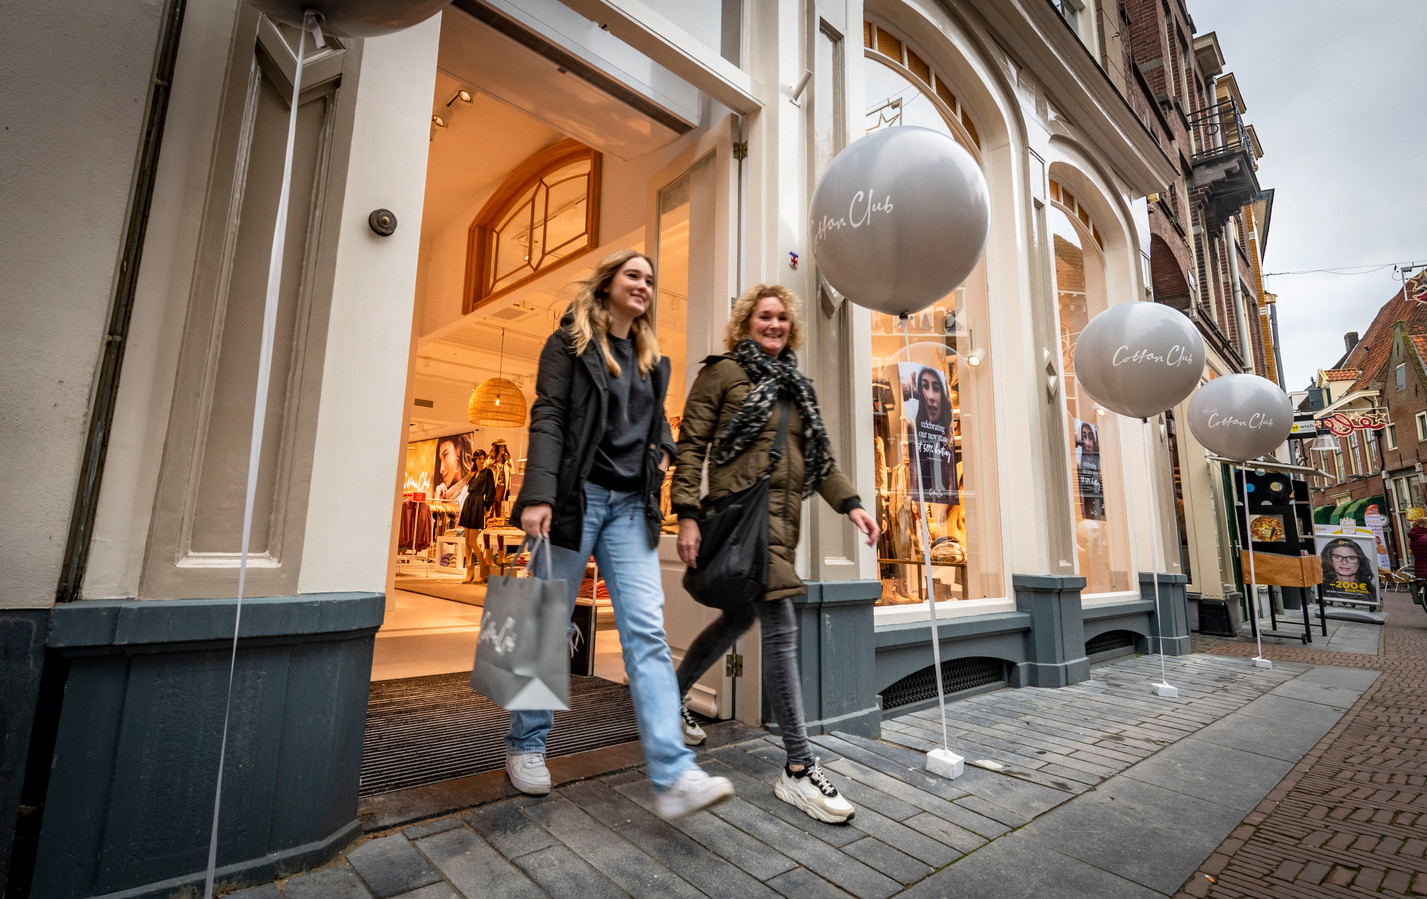 Naniek Thijsen en haar moeder lopen tevreden naar buiten na hun eerste aankoop in Cotton Club. De grote winkelketen opende vandaag voor het eerst de deuren in Zutphen. Waar dit soort winkelformules Zutphen tot op heden links lieten liggen, weten ze Zutphen nu wel te vinden.